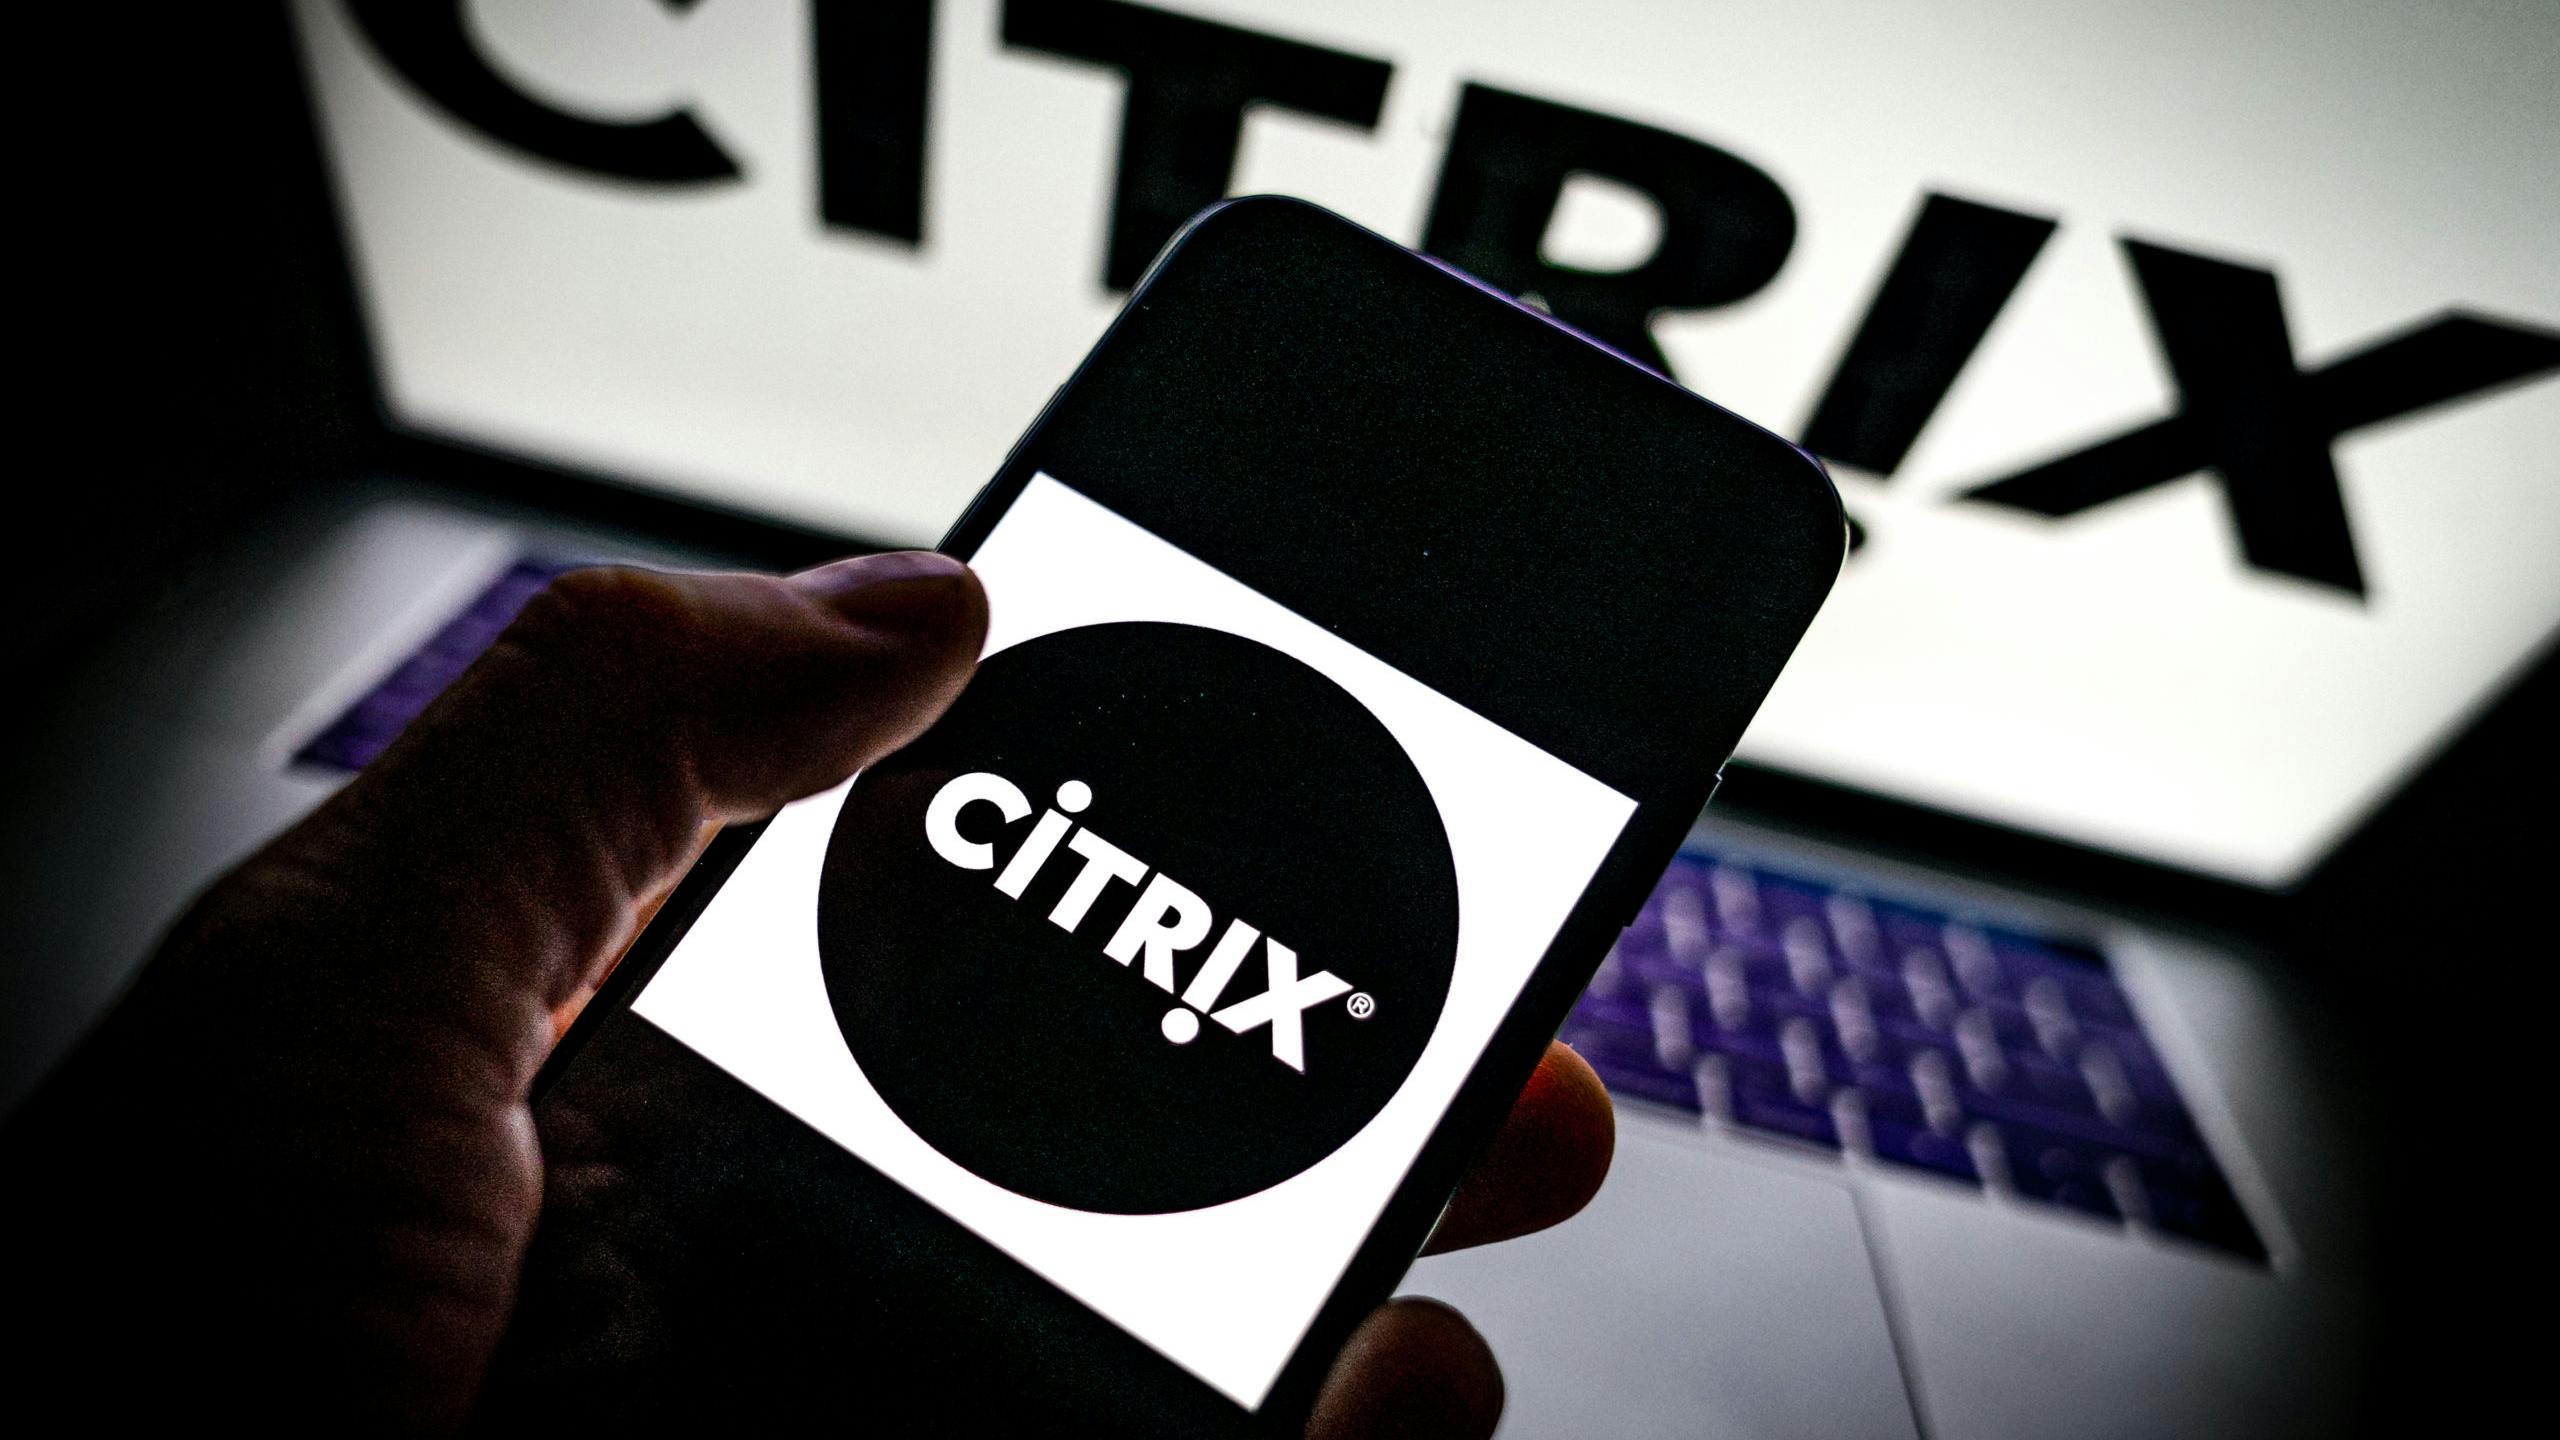 ILLUSTRATIEF - Een laptop en telefoon met het logo van Citrix. Diverse bedrijven zijn gestopt met het gebruik van de VPN-software nadat er een ernstig lek ontdekt is. Foto: Rob Engelaar / Hollandse Hoogte